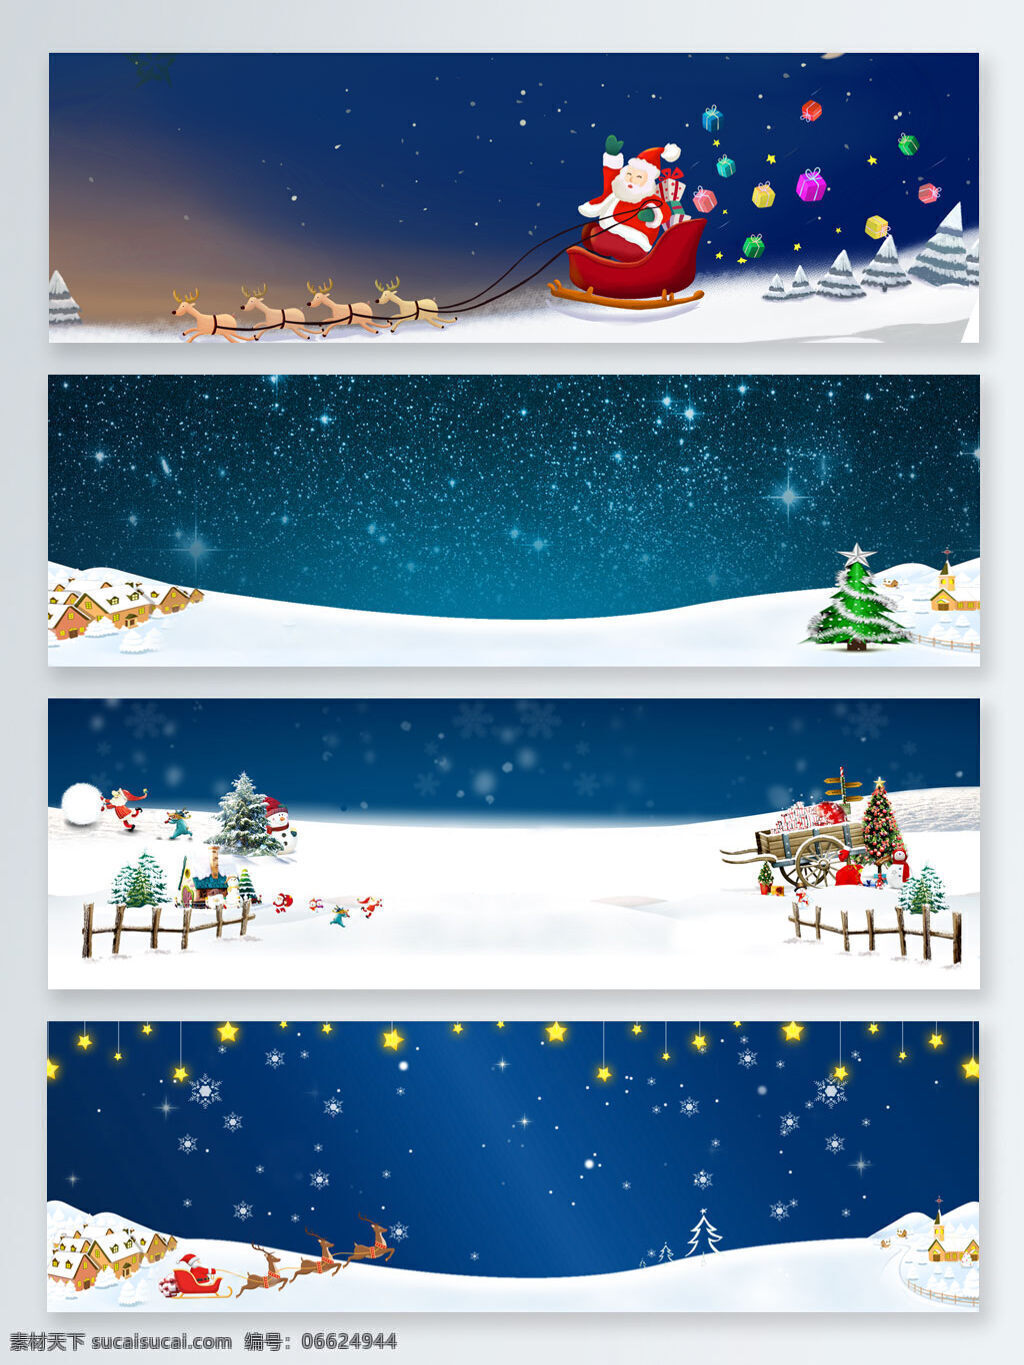 冬季 冬季暖歌 冬天 冬至 寒冬 小寒 星空 雪人 圣诞节 蓝色 主题 促销 banner